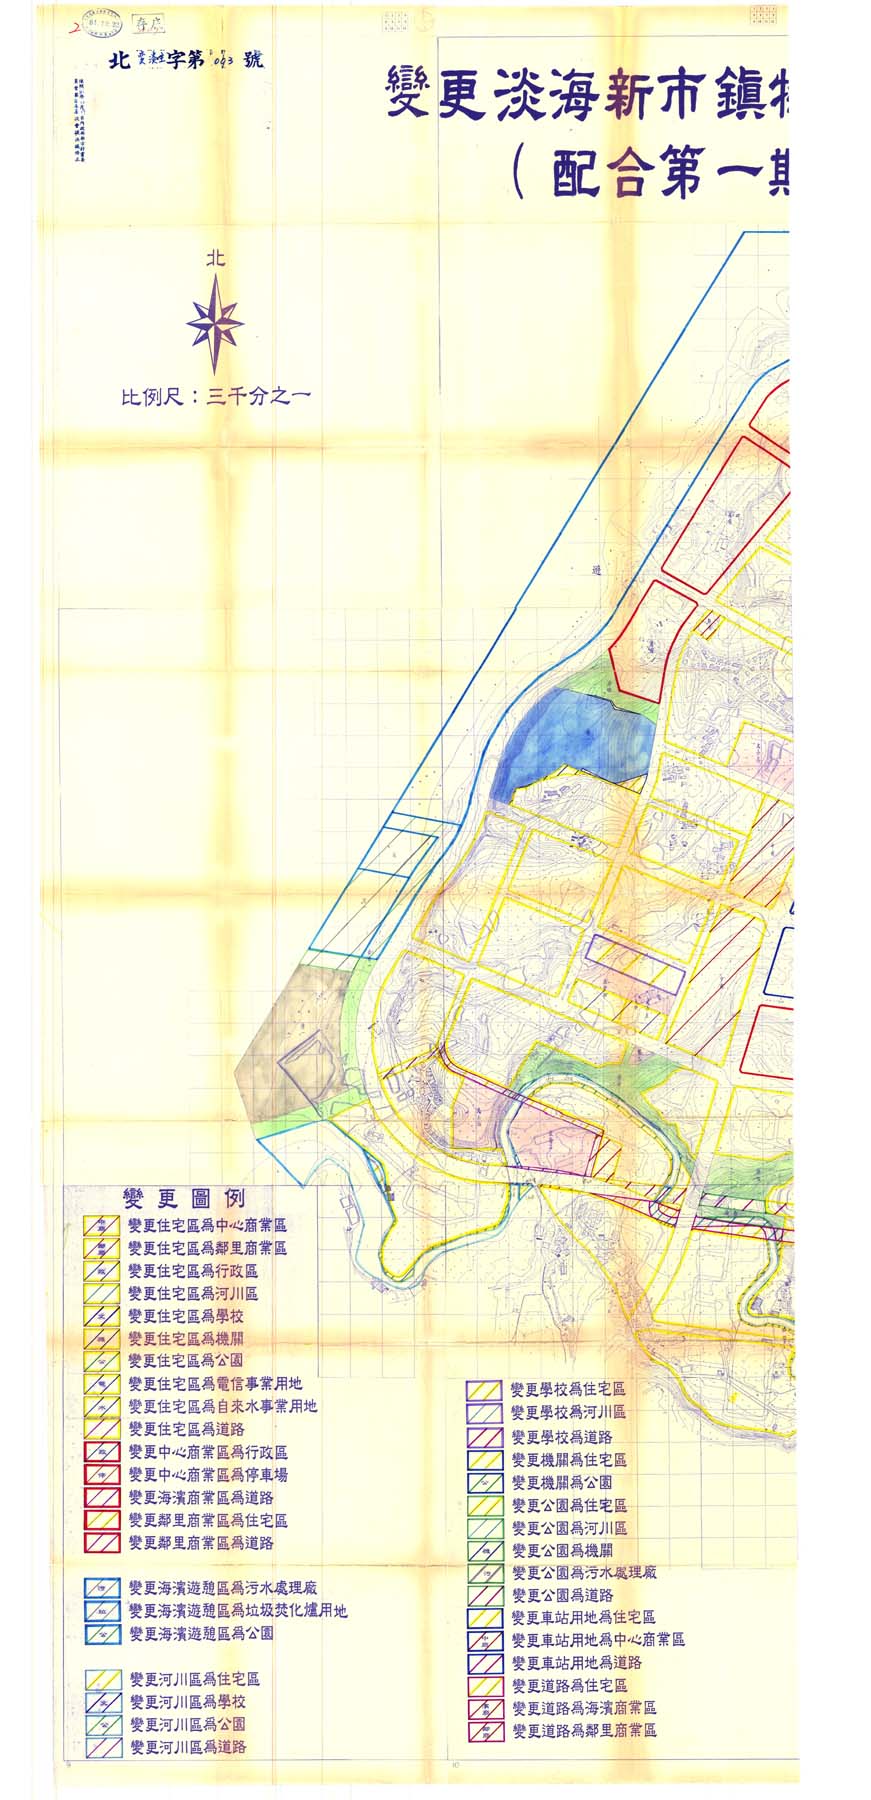 變更淡海新市鎮特定區主要計畫圖(配合第一期細部計畫案)1-2